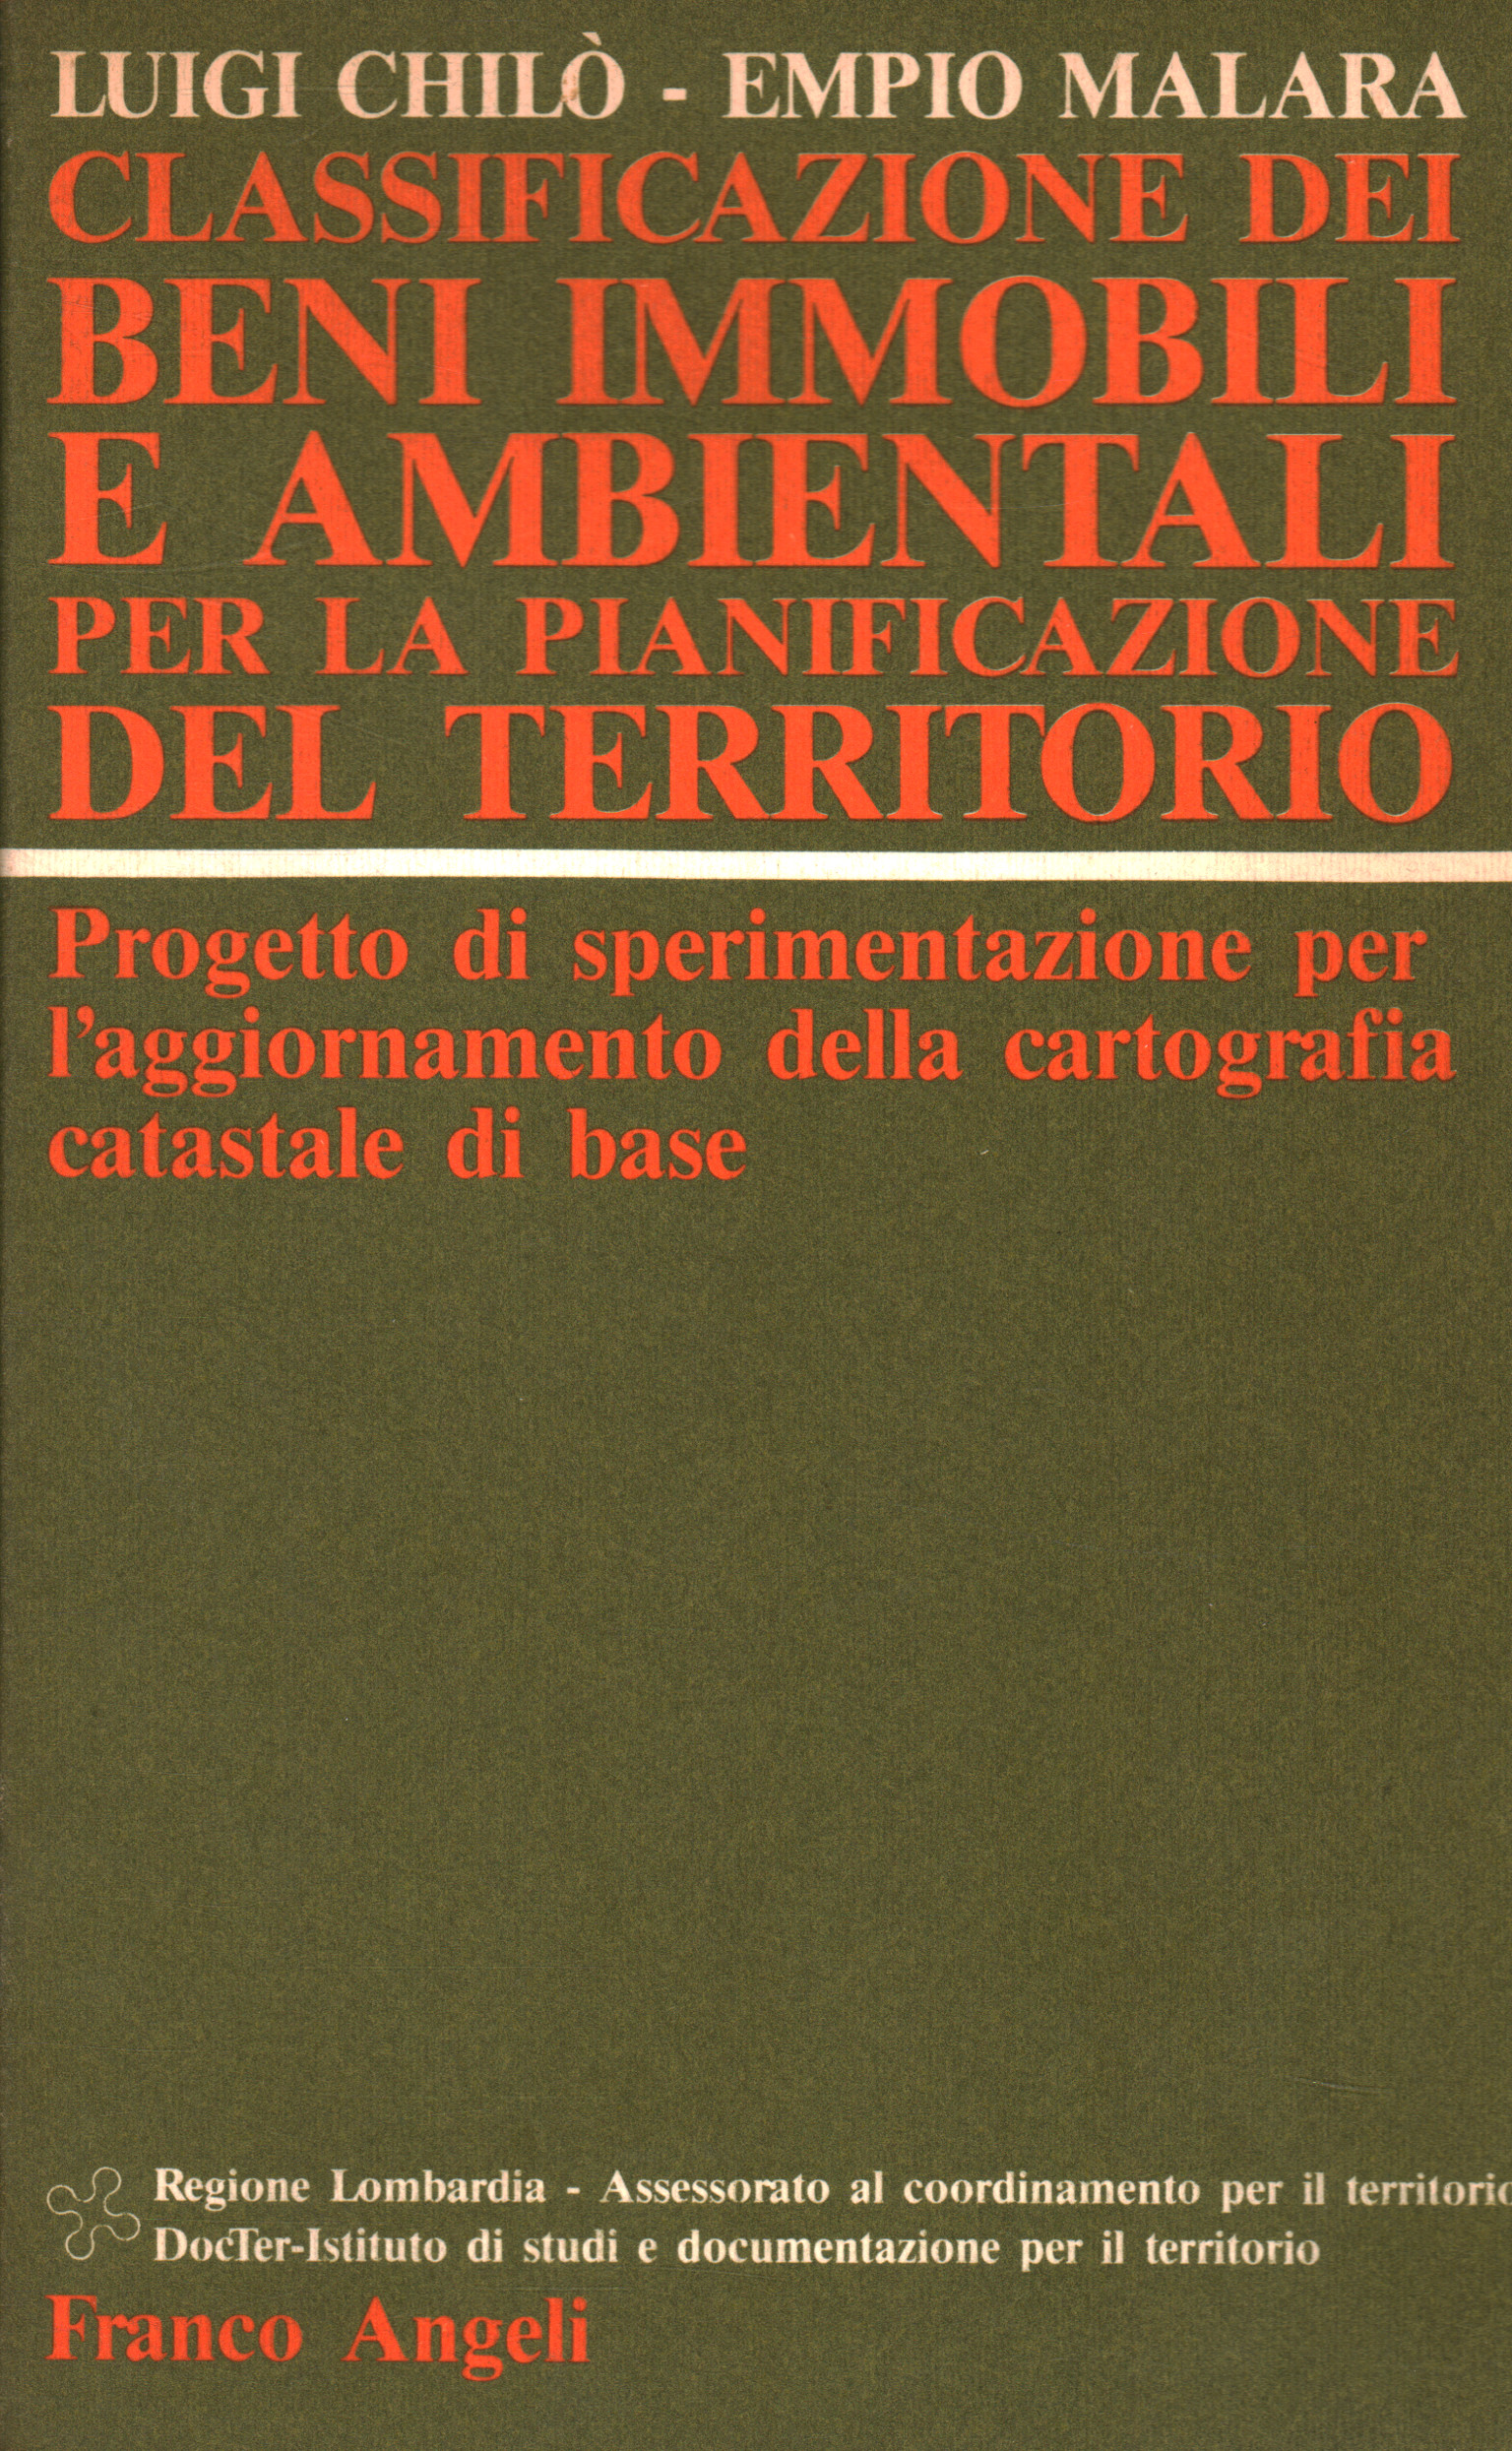 Klassifizierung von Immobilien und Umweltvermögenswerten für Luigi Chiò Empio Malara